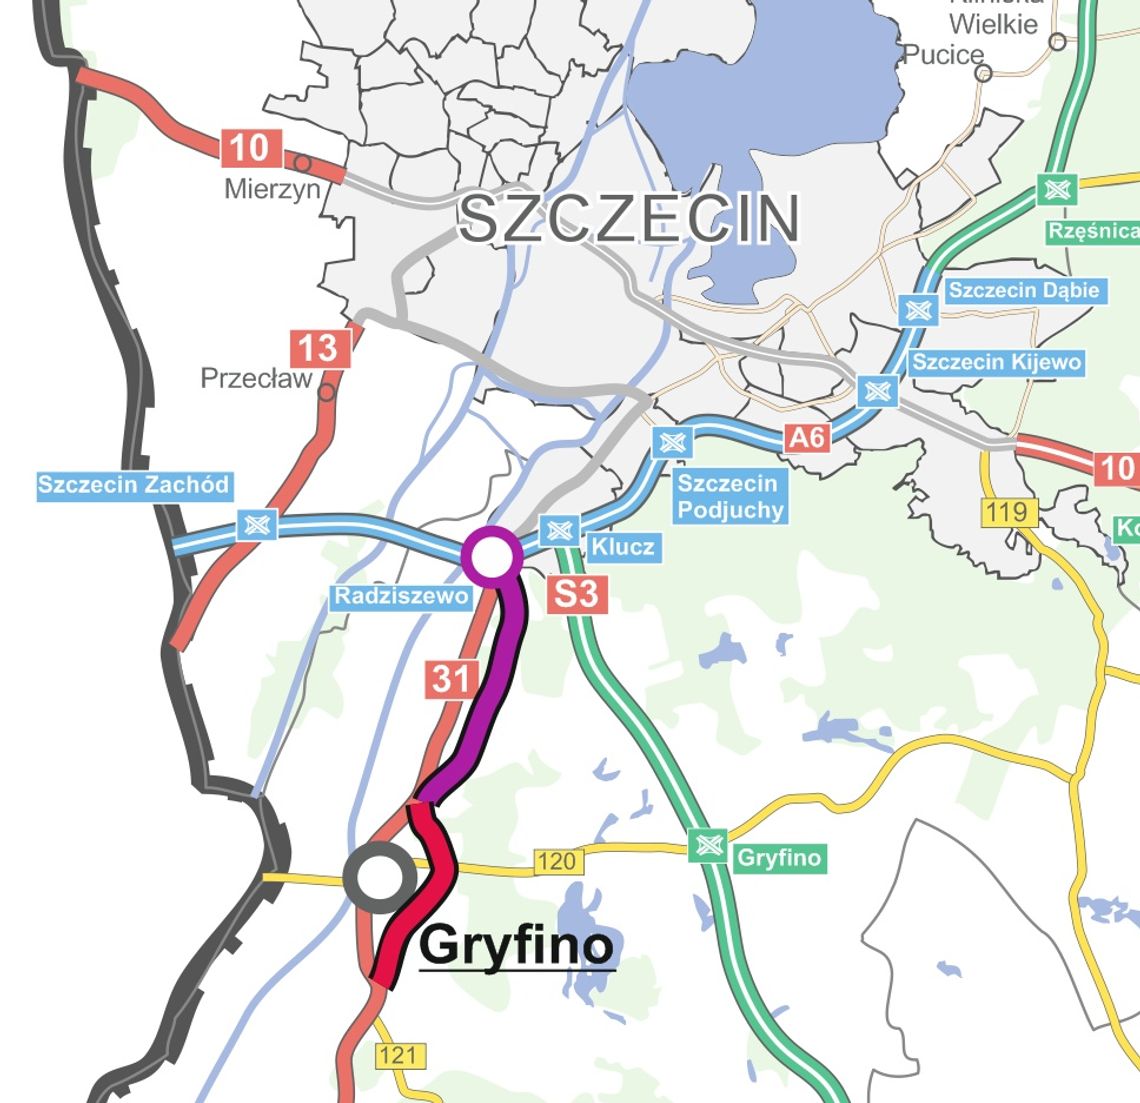 Wybrano wykonawców dokumentacji dla obwodnicy Gryfina i odcinka Radziszewo-Gryfino na DK31